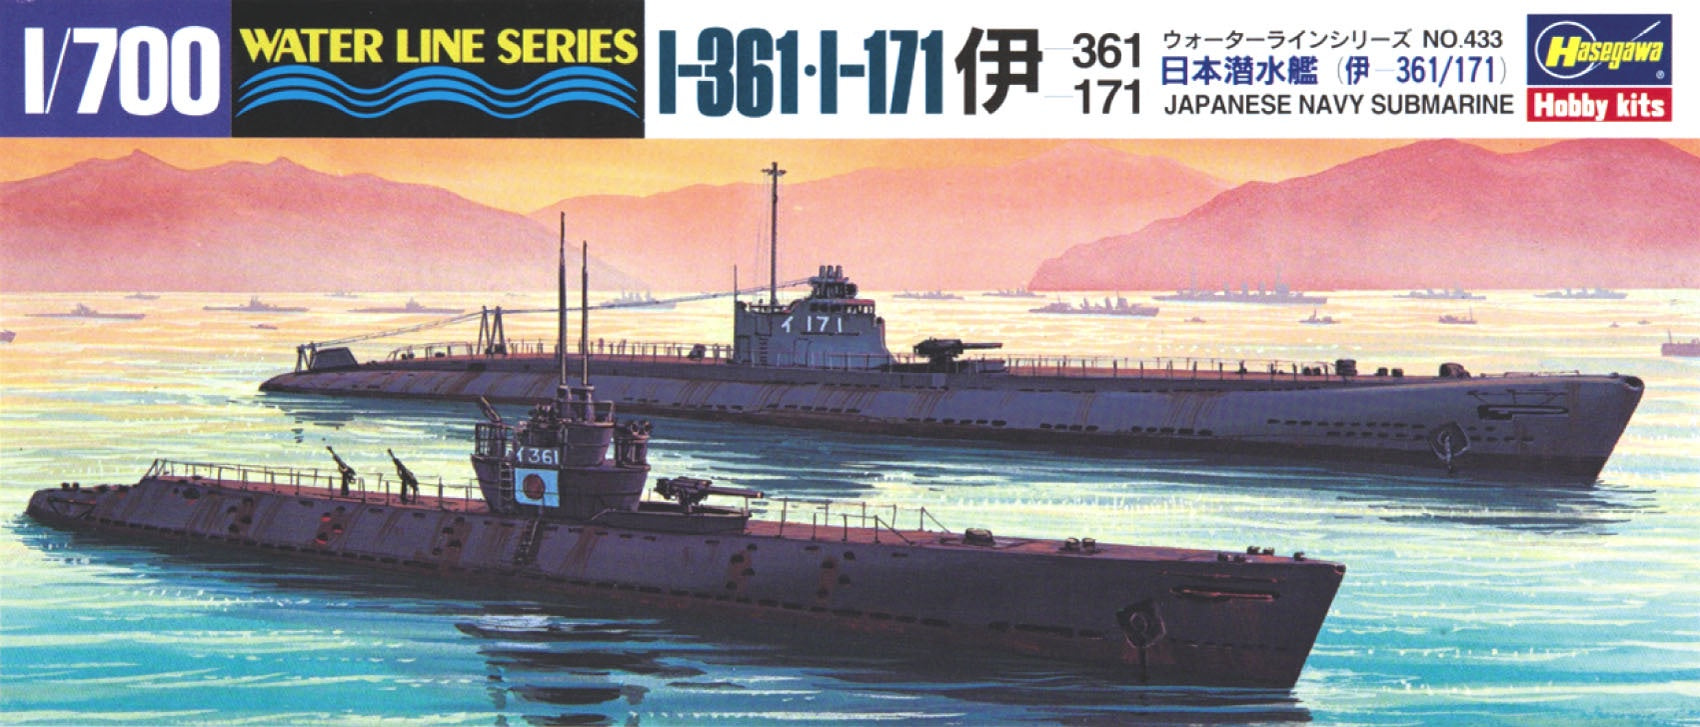 Submarine I-361/I-171 1/700 #49433 by Hasegawa